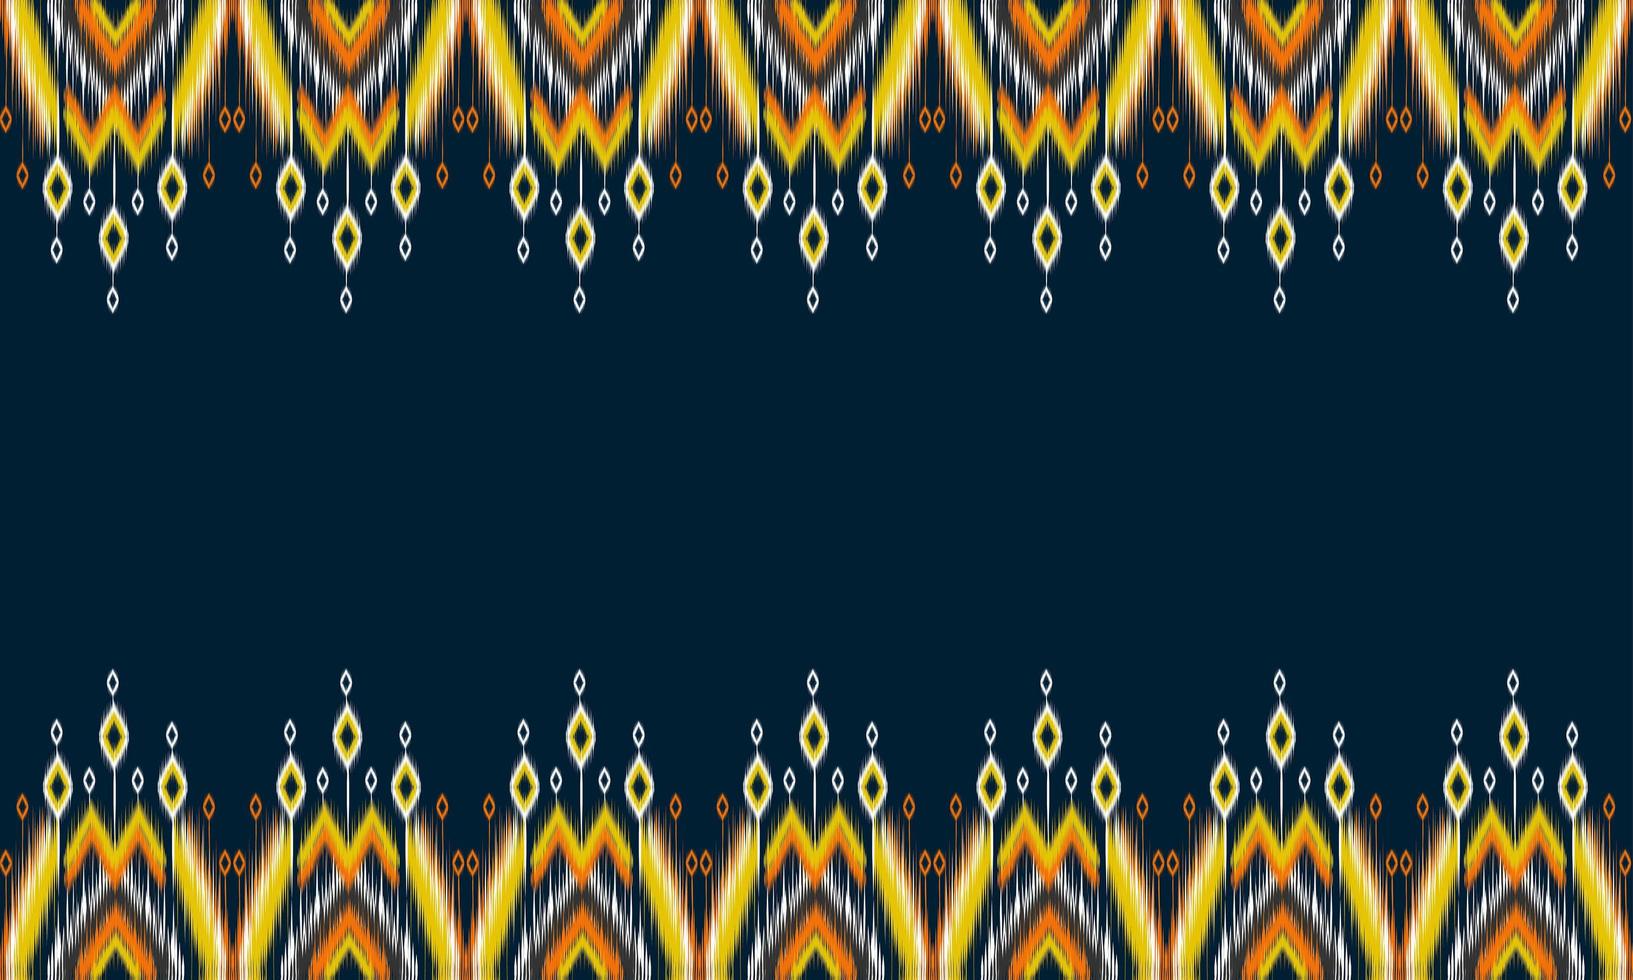 Motif ikat oriental ethnique géométrique design traditionnel pour le fond, tapis, papier peint, vêtements, emballage, batik, tissu, illustration vectorielle. style de broderie. vecteur